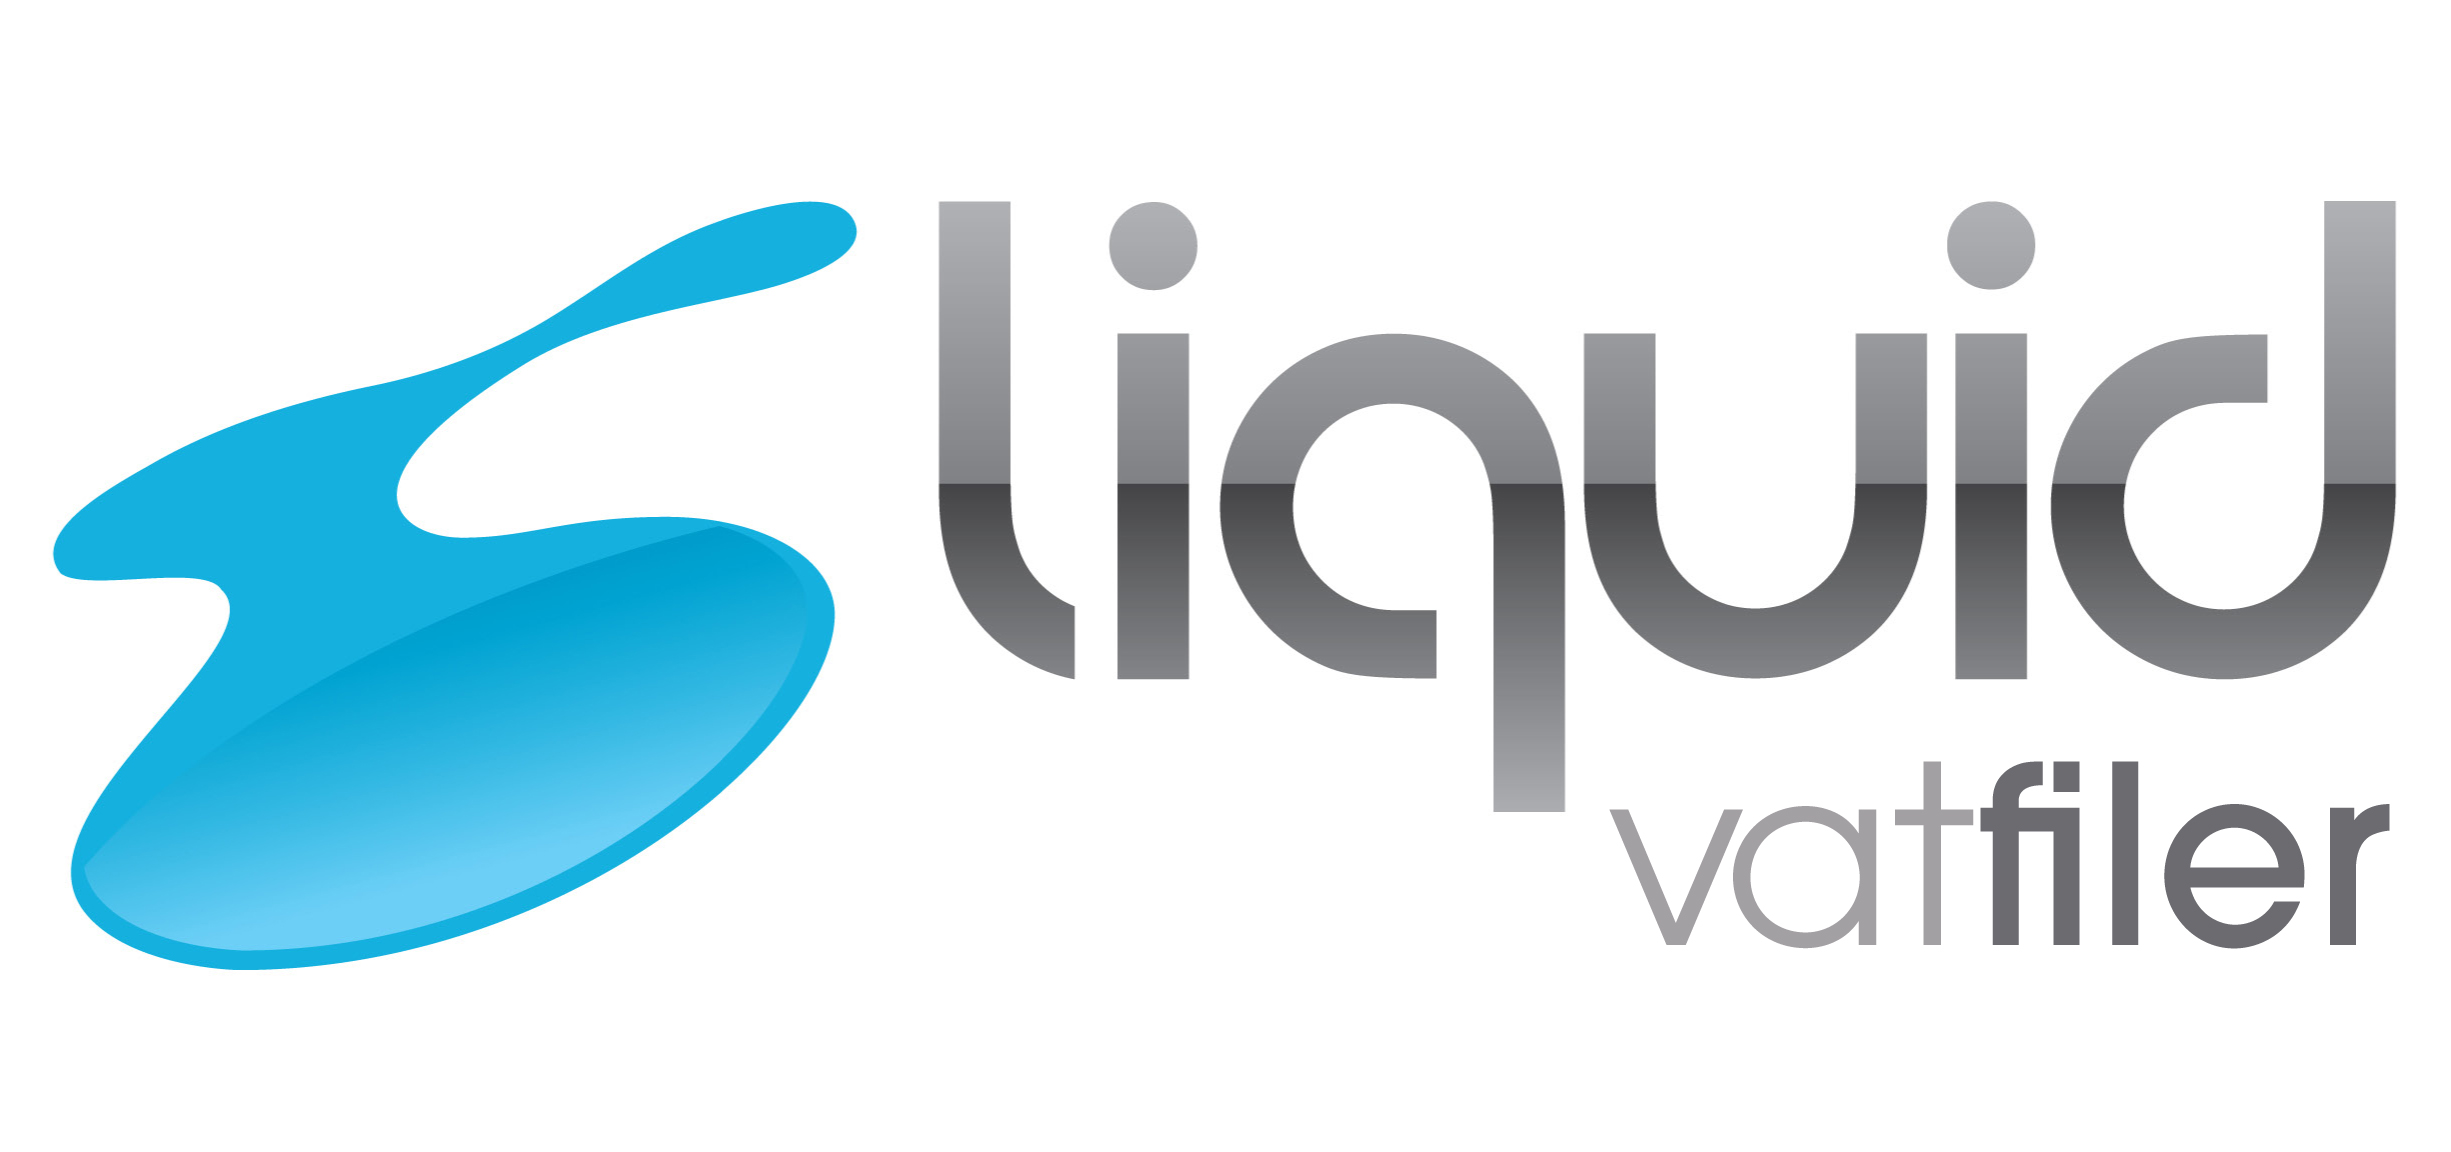 Liquid Vat filer Logo